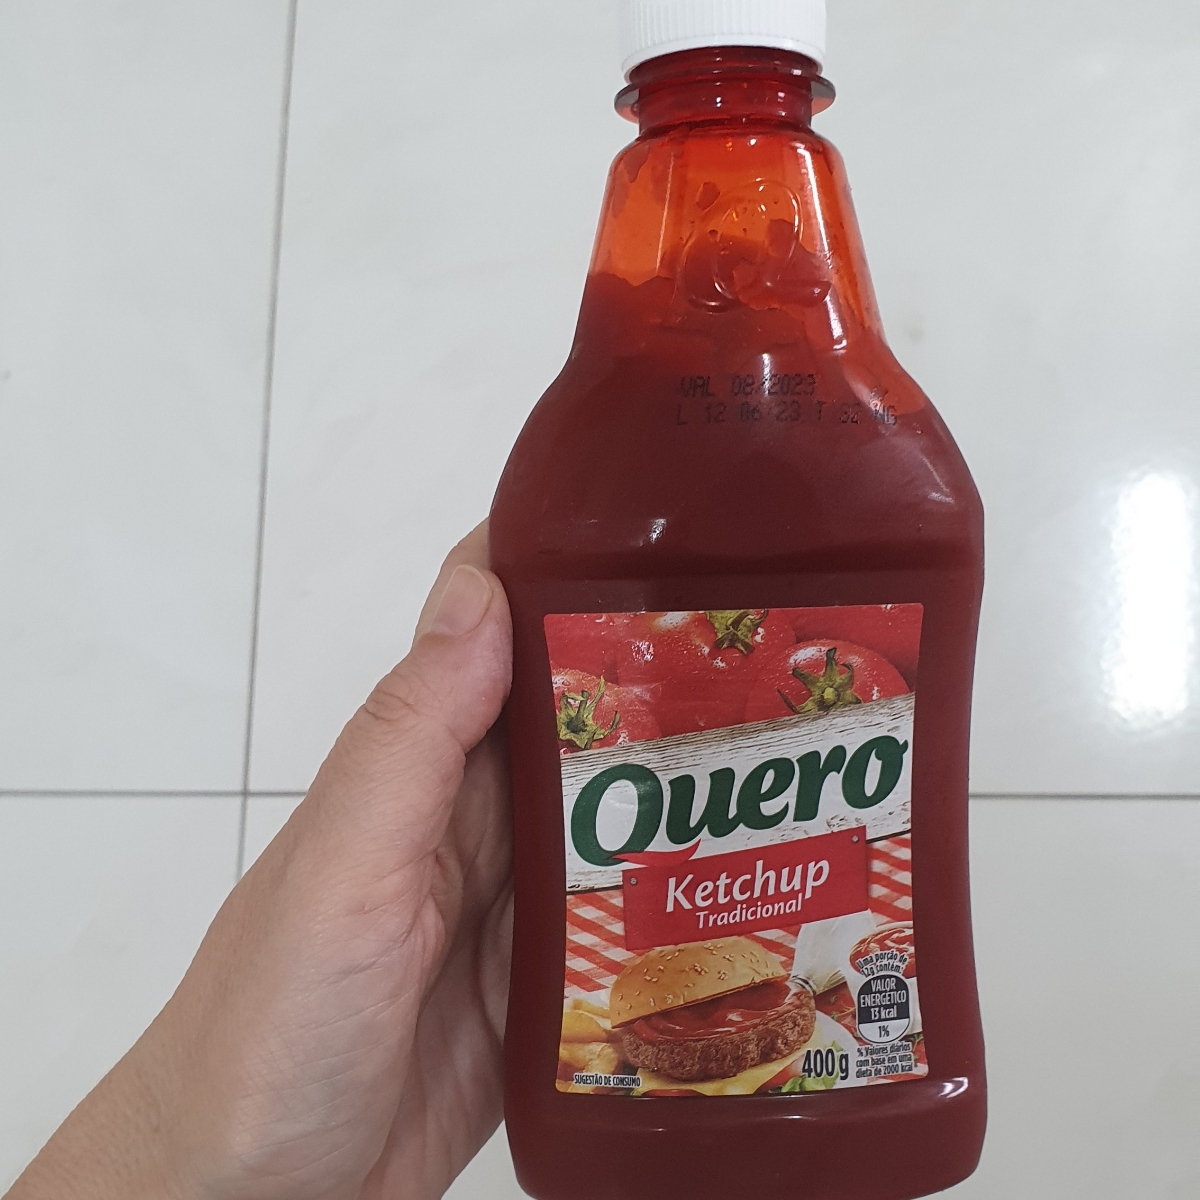 Quero Ketchup Tradicional Review | abillion